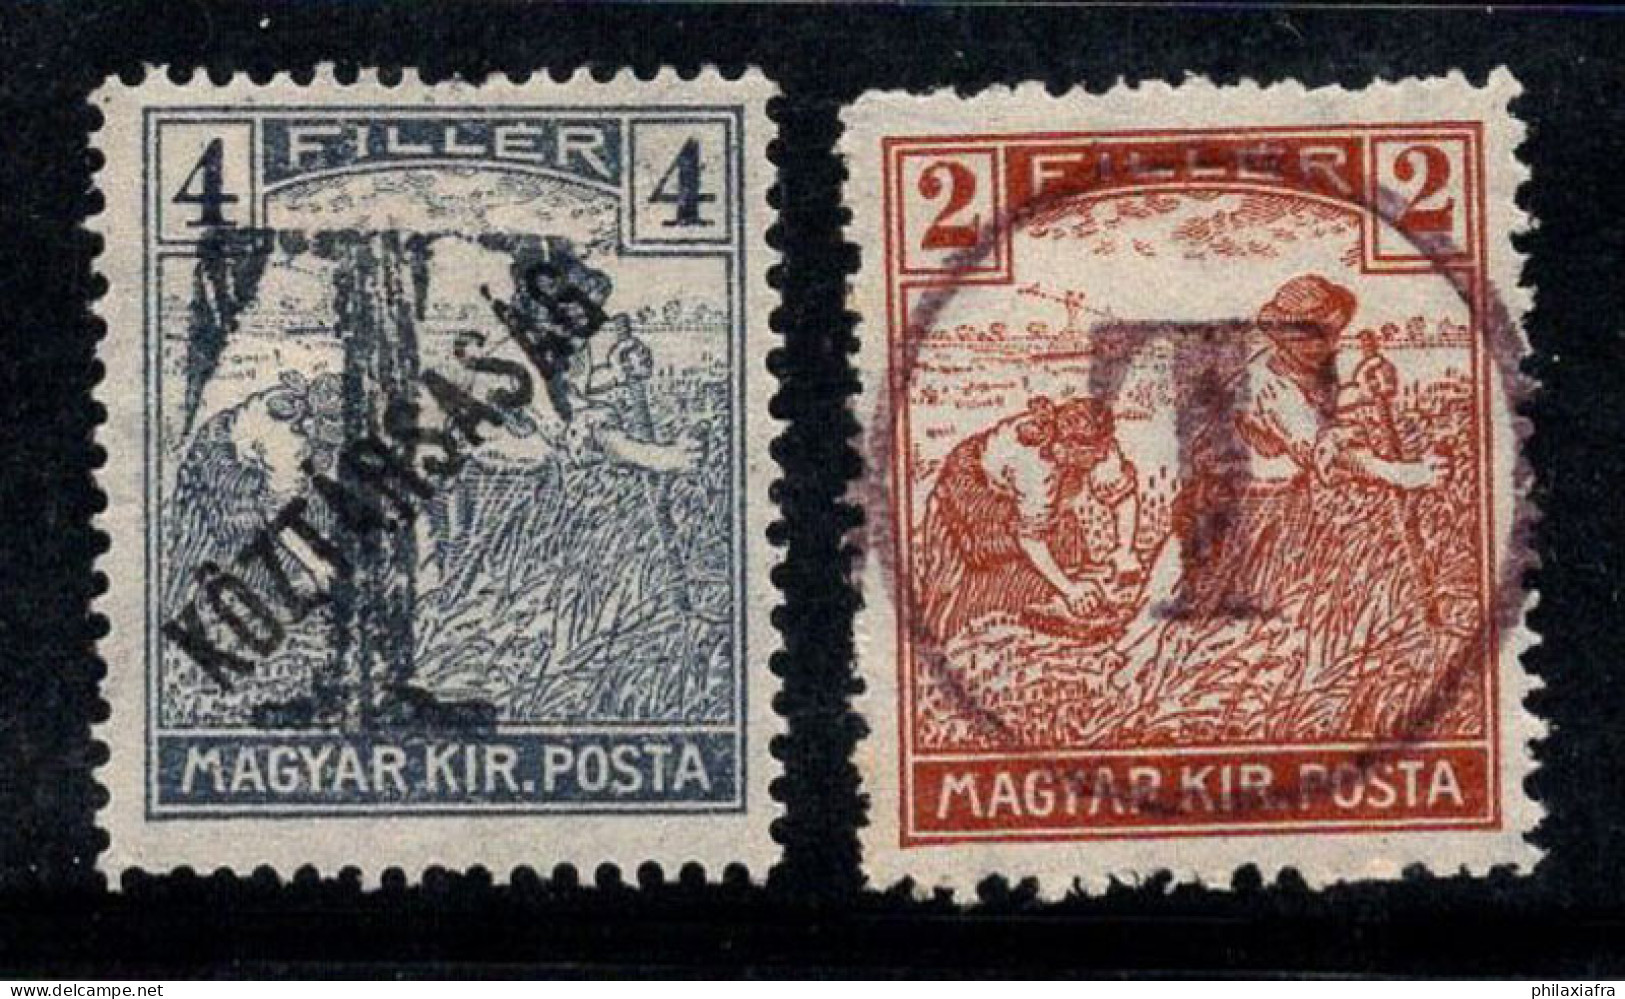 Hongrie 1919 Neuf * MH 100% Surimprimé T Timbre-taxe - Portomarken